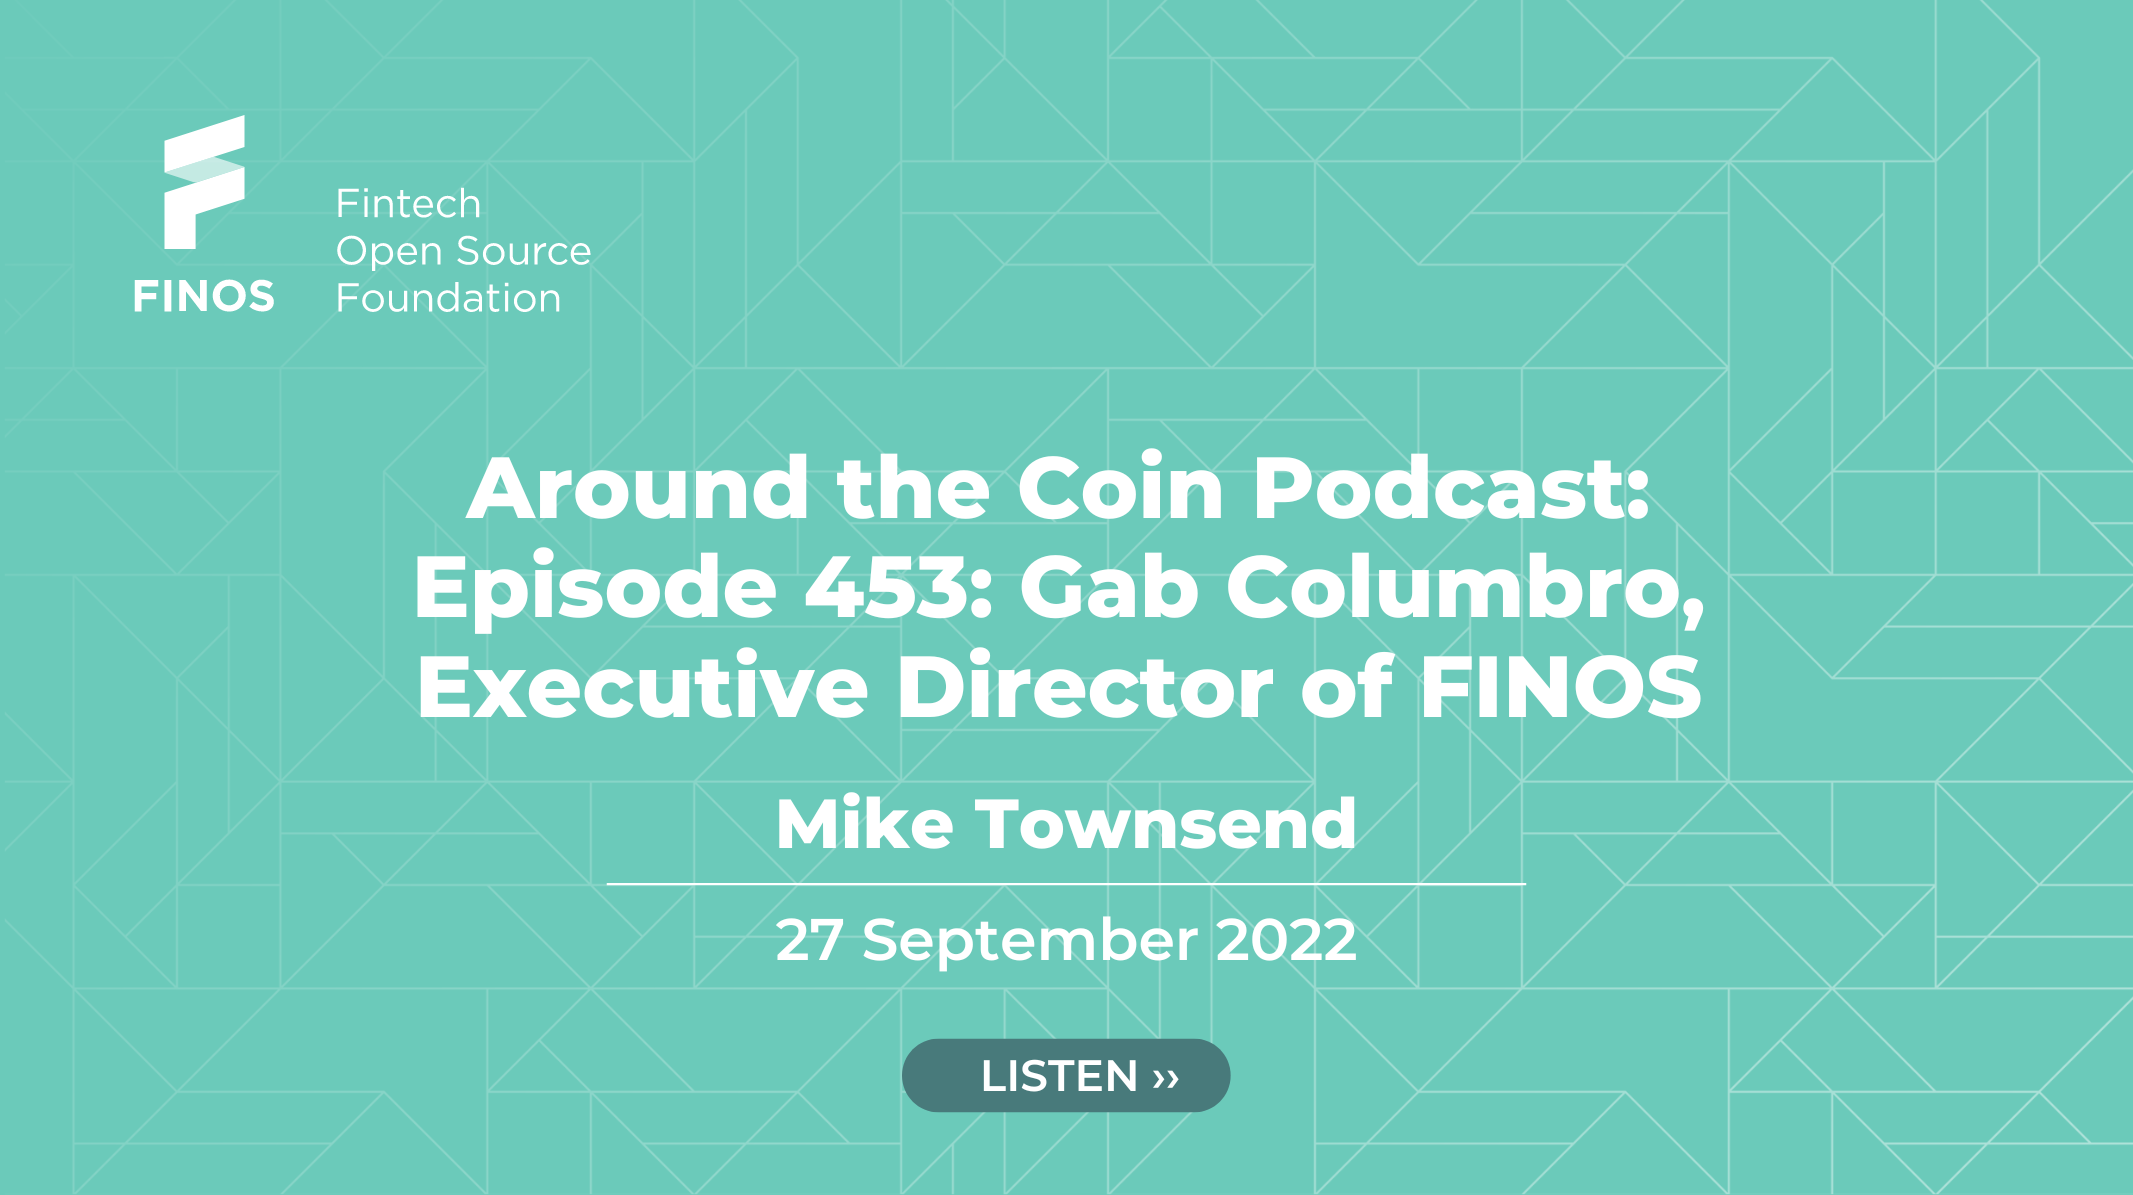 Around the Coin Podcast: Episode 453: Gab Columbro, Executive Director of FINOS